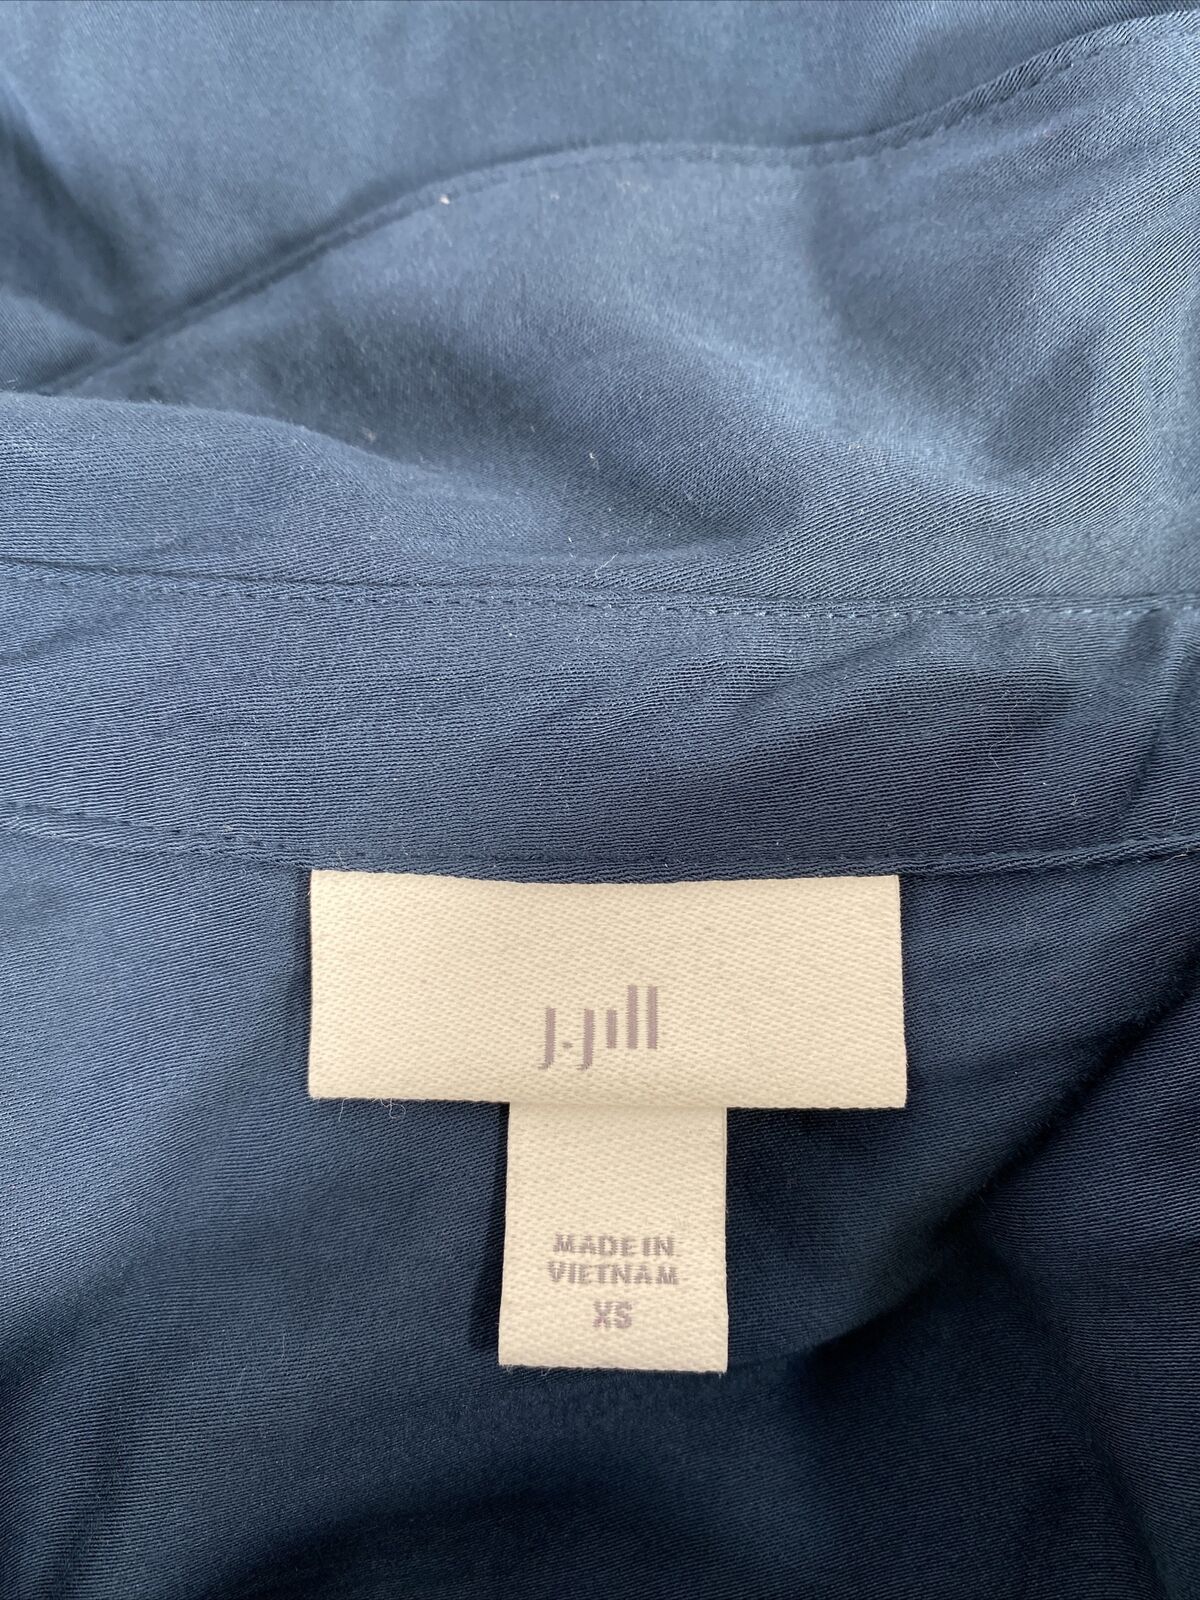 J. Jill Camisa azul con botones delanteros de lujo suave y manga 3/4 para mujer - XS